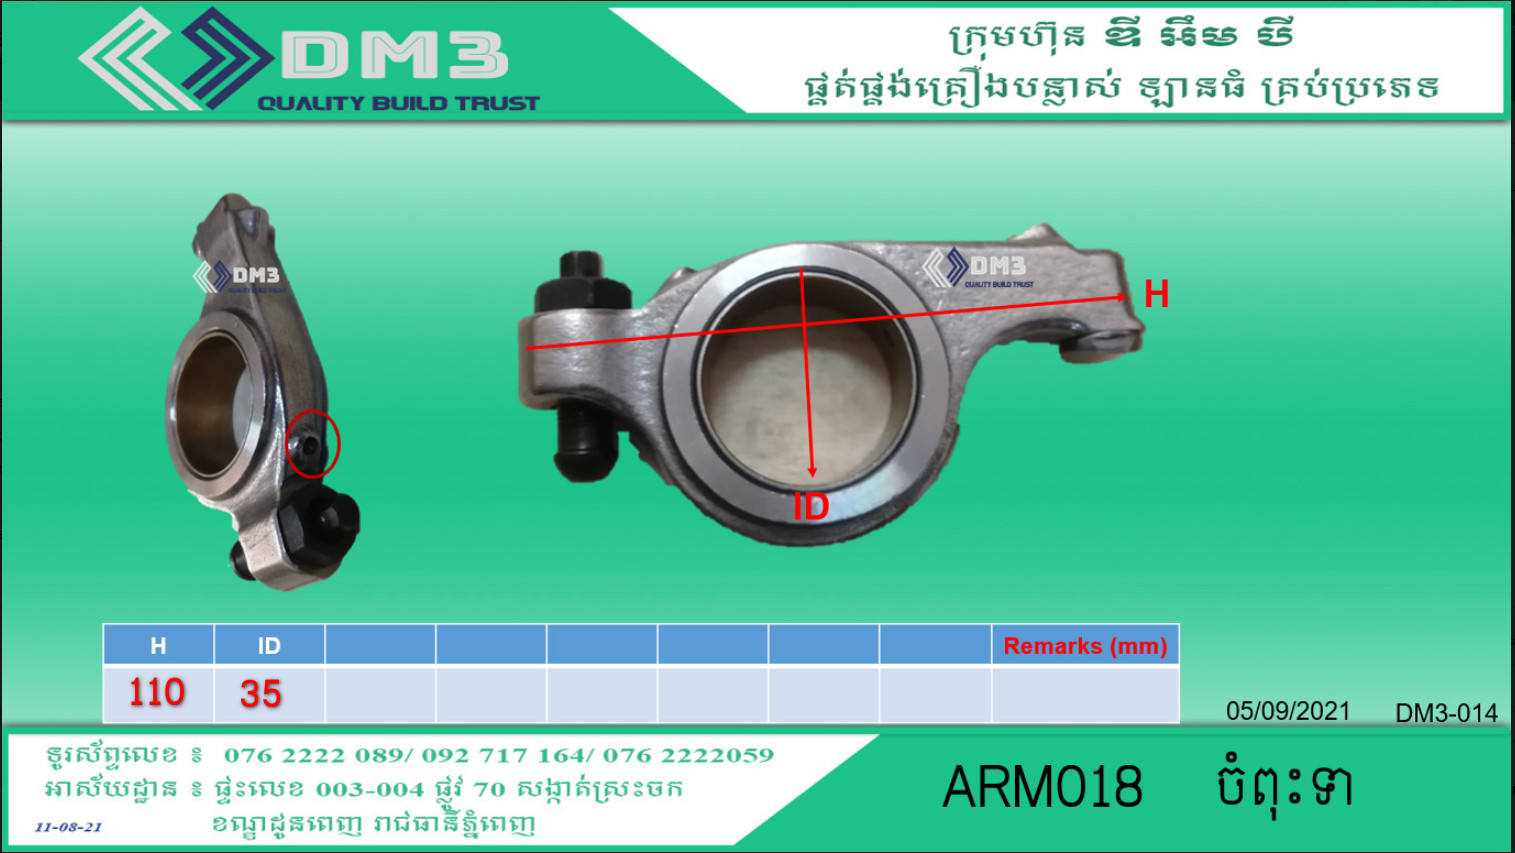 ARM018